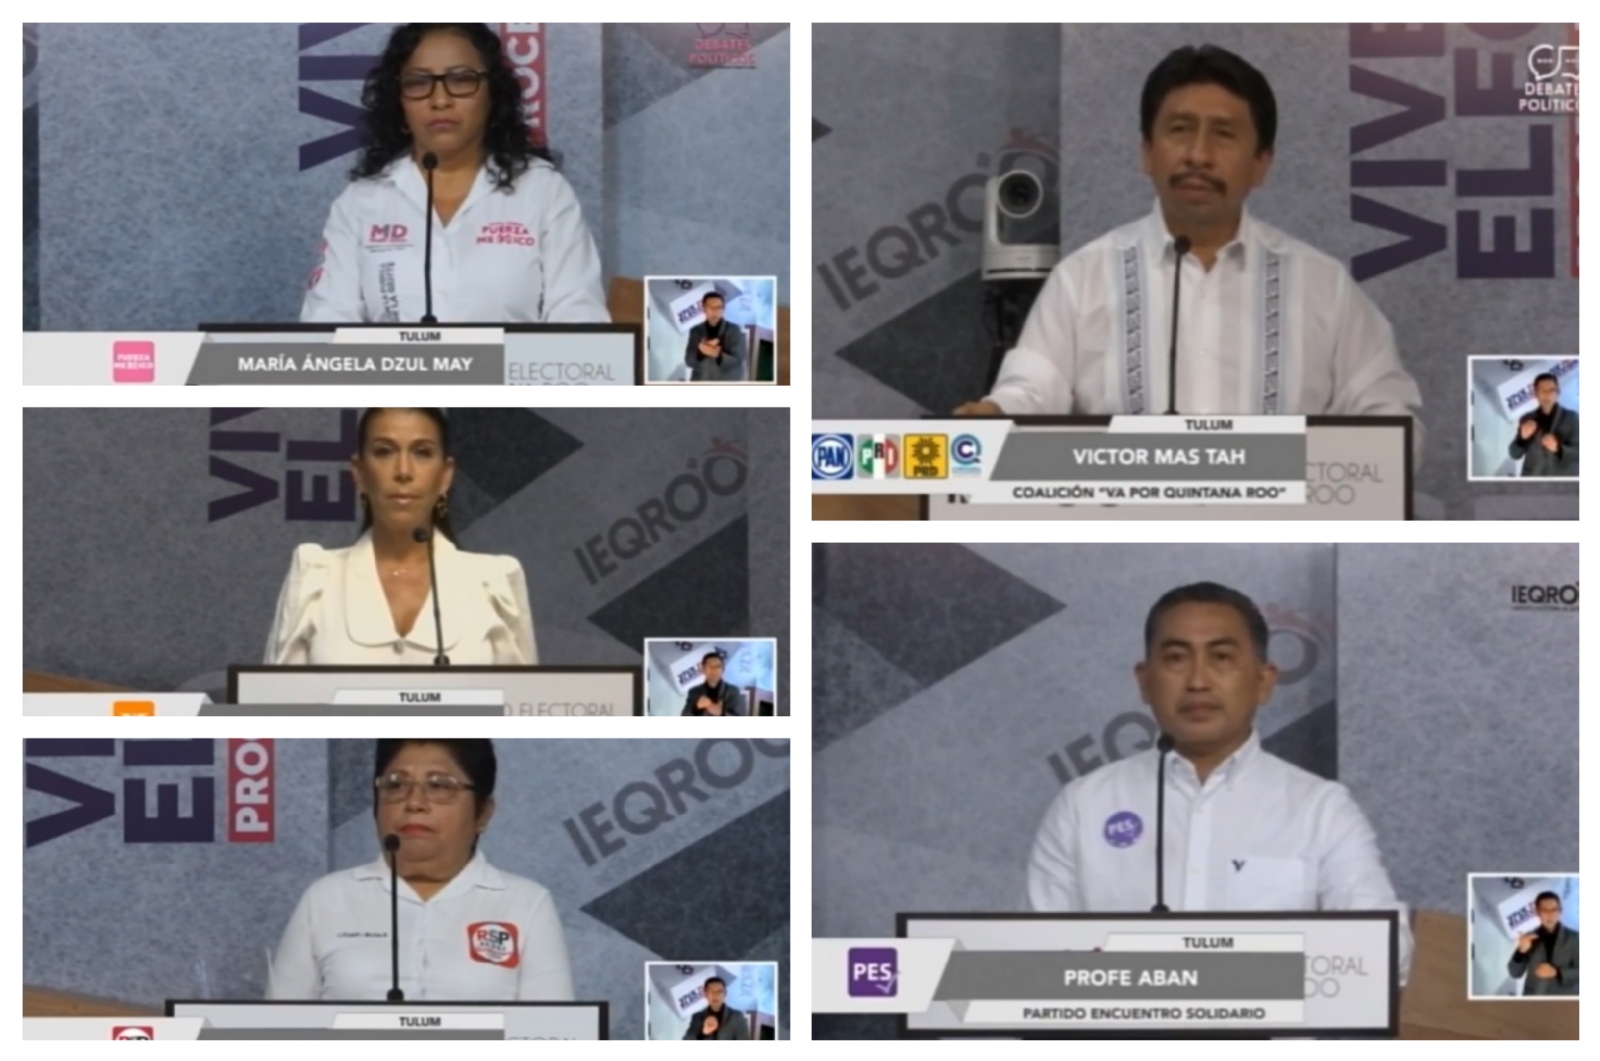 Elecciones Quintana Roo: Candidatos de Tulum se le van a la yugular a Victor Mas Tah